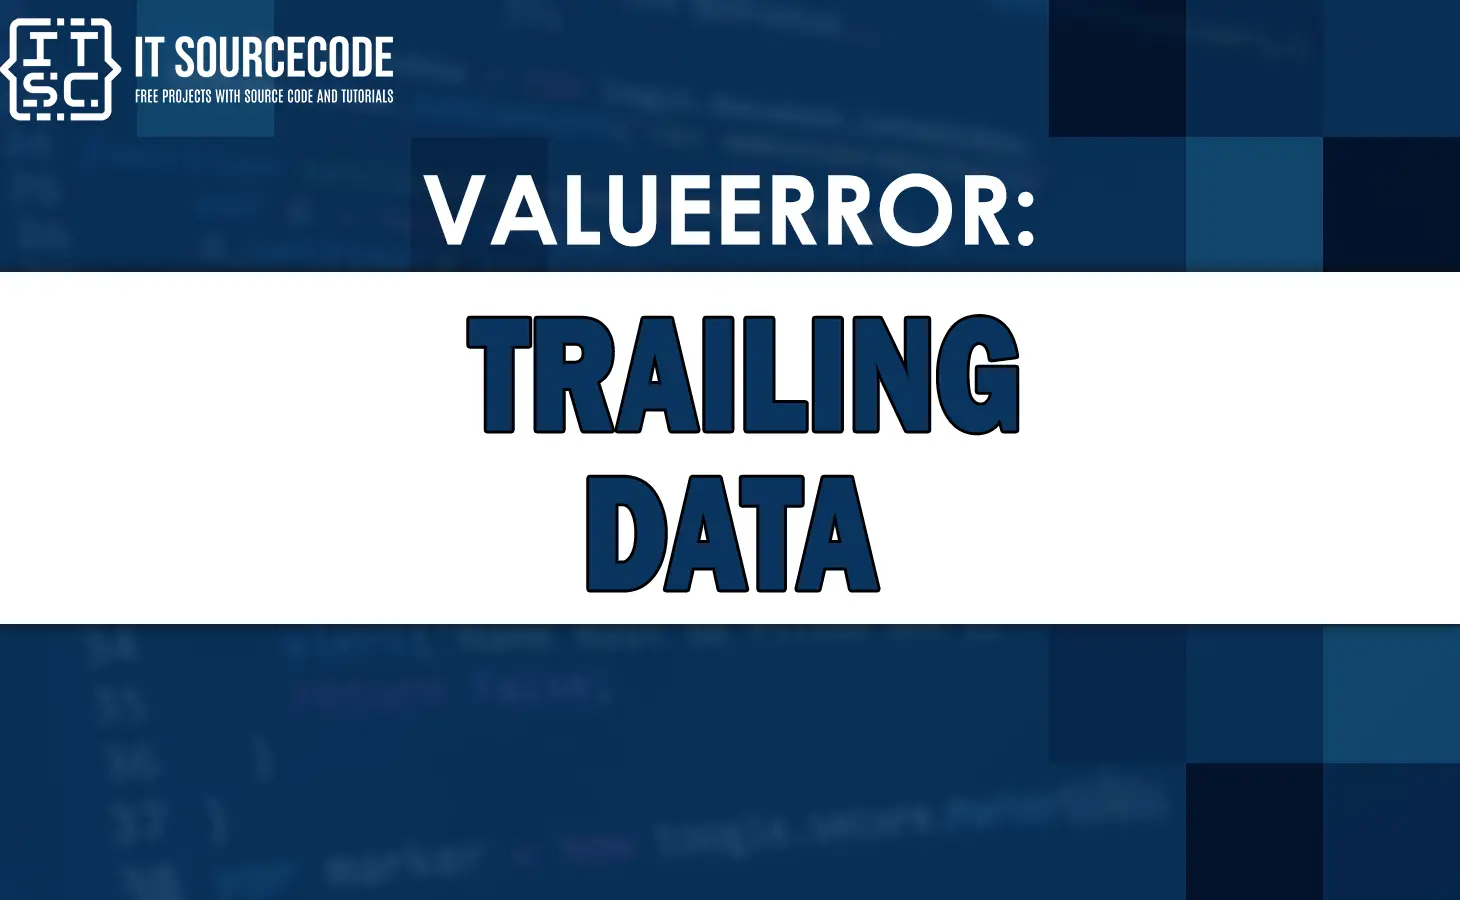 Valueerror trailing data